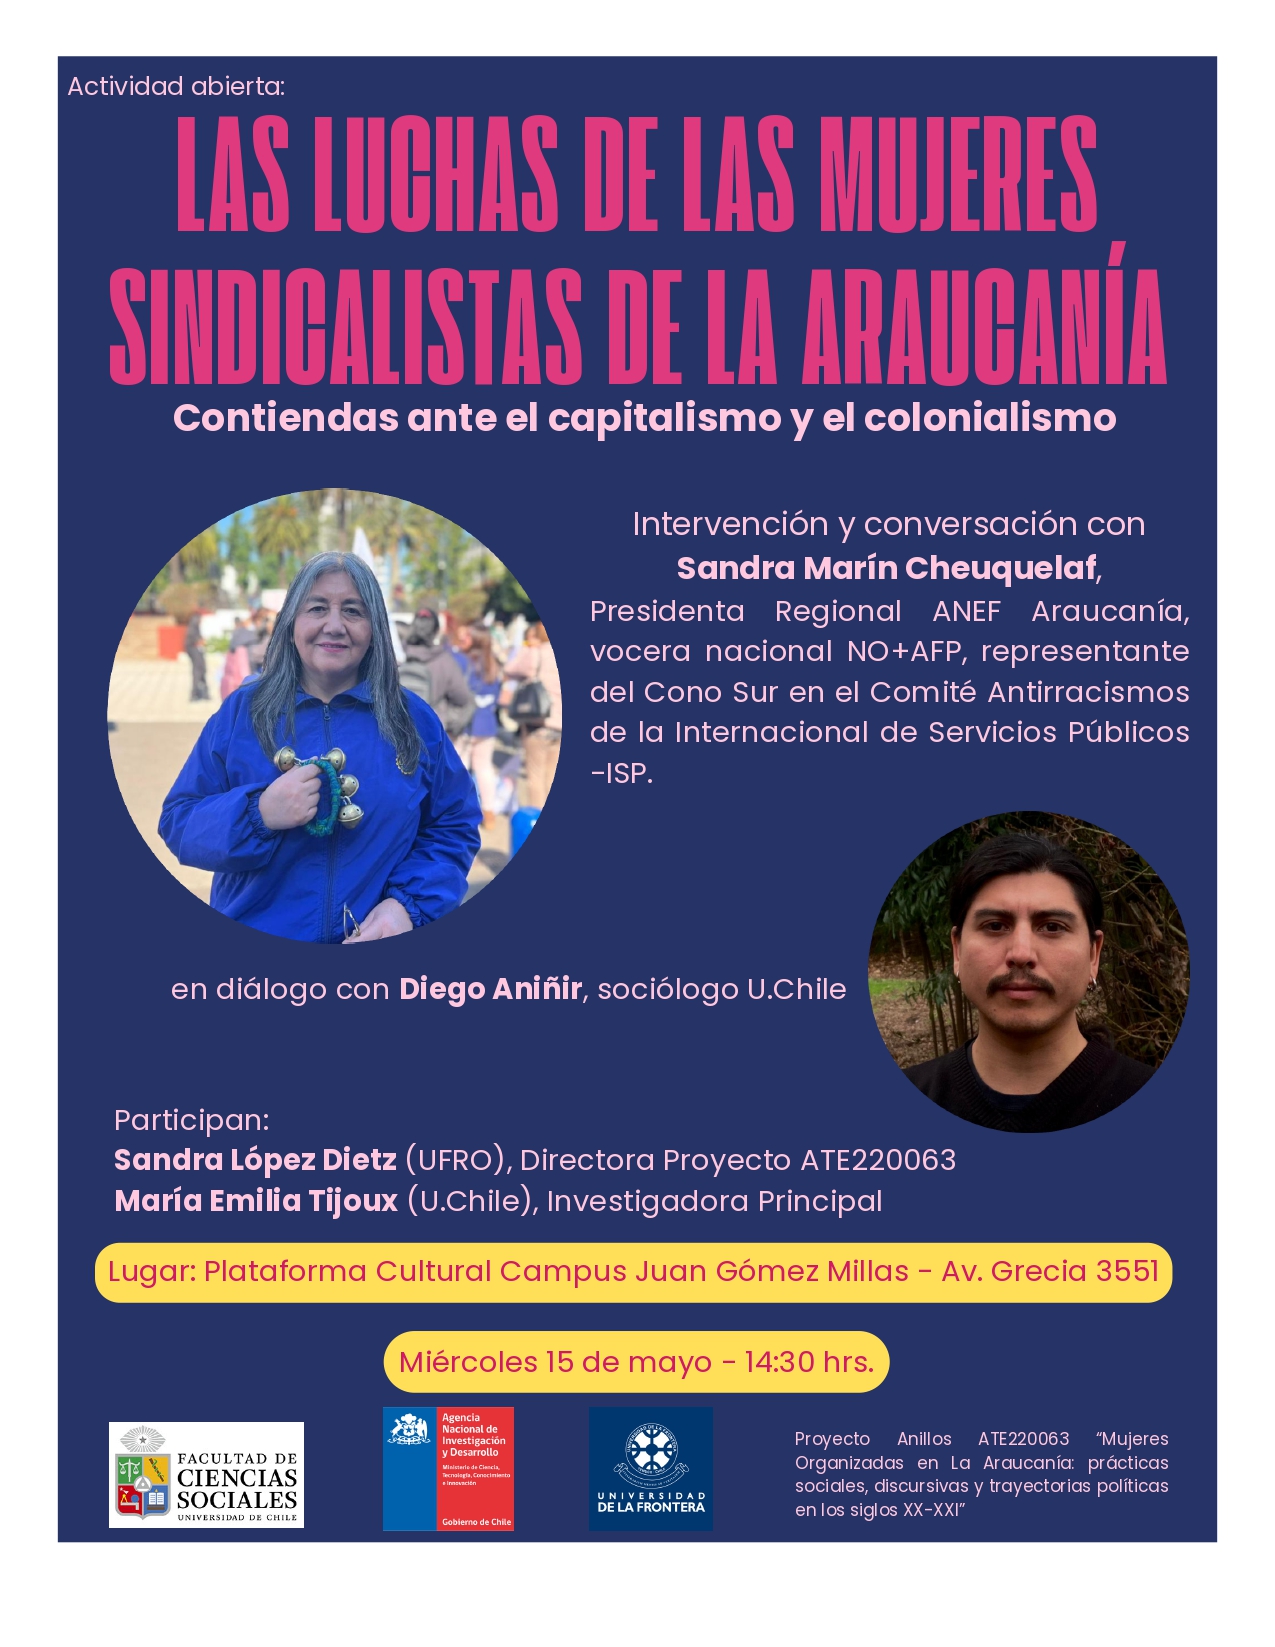 Actividad abierta “Las luchas de las mujeres sindicalistas de la Araucanía. Contiendas ante el capitalismo y el colonialismo”.